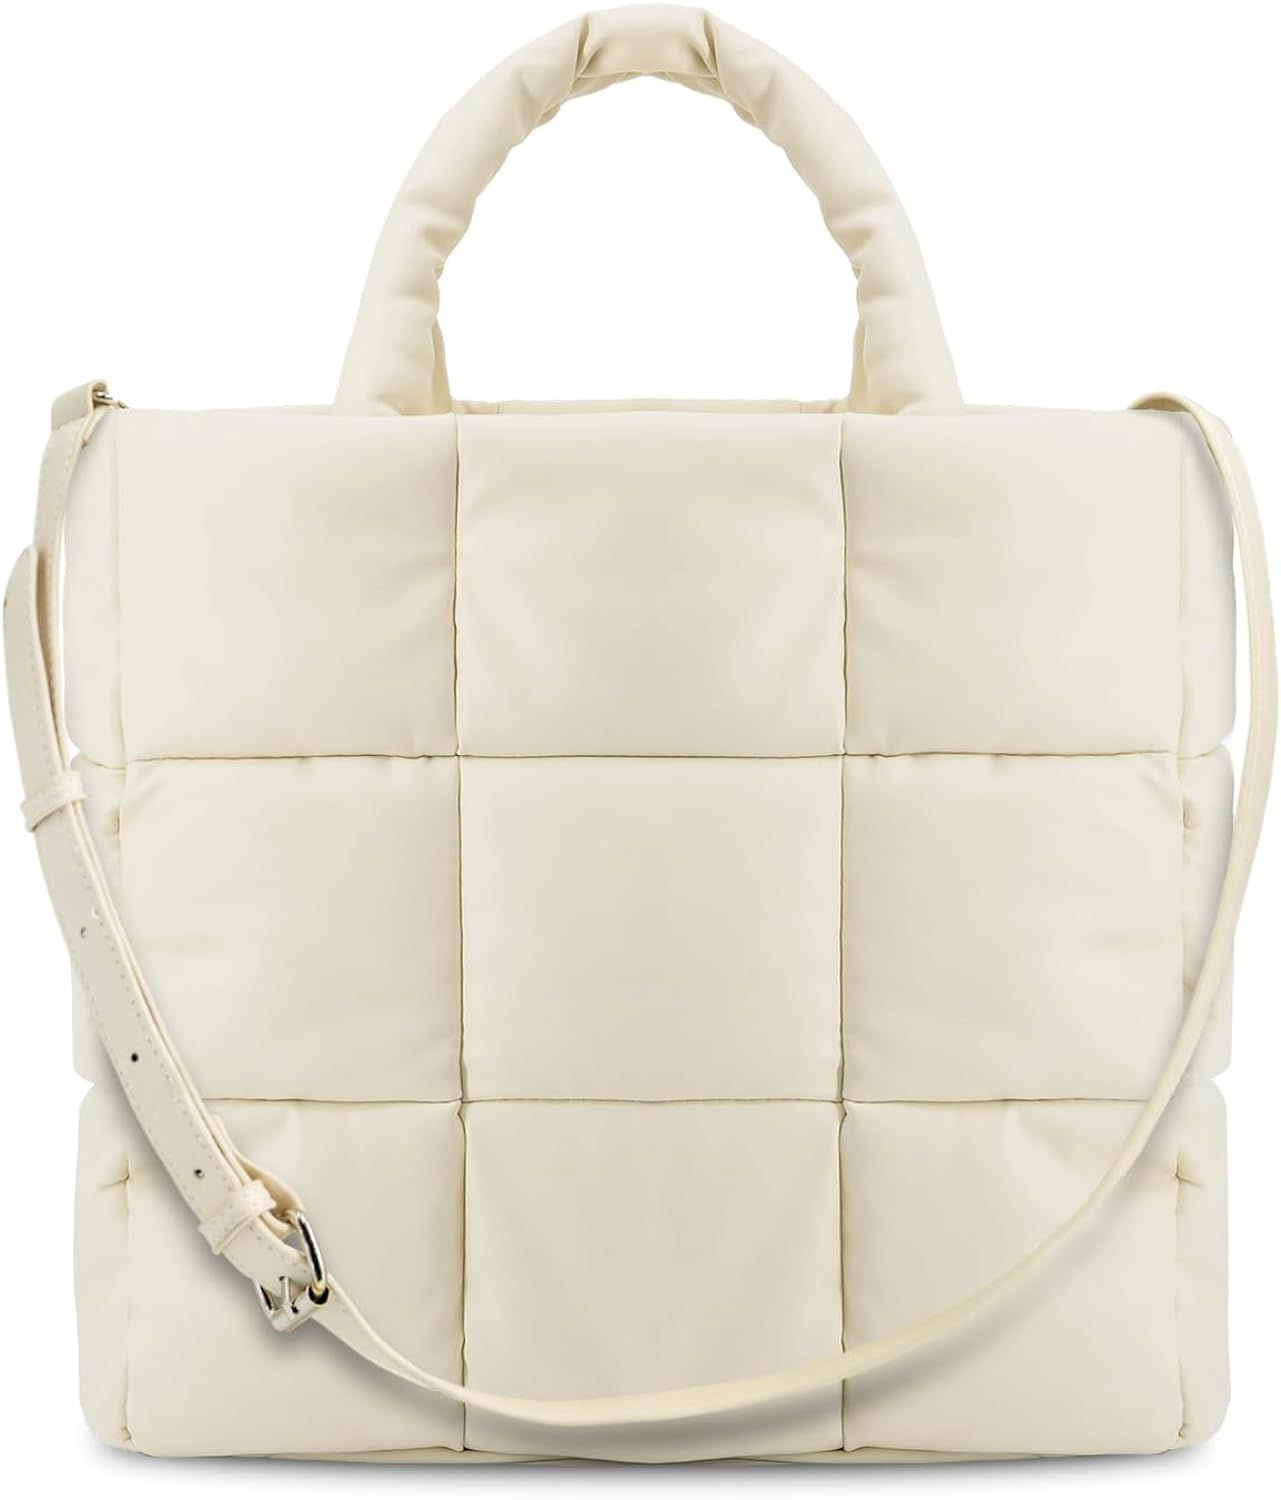 SADDROP Handbags for women,handbags,Large Puffer Tote Bag, Hobo bags for women，Trendy tote bag | Amazon (US)